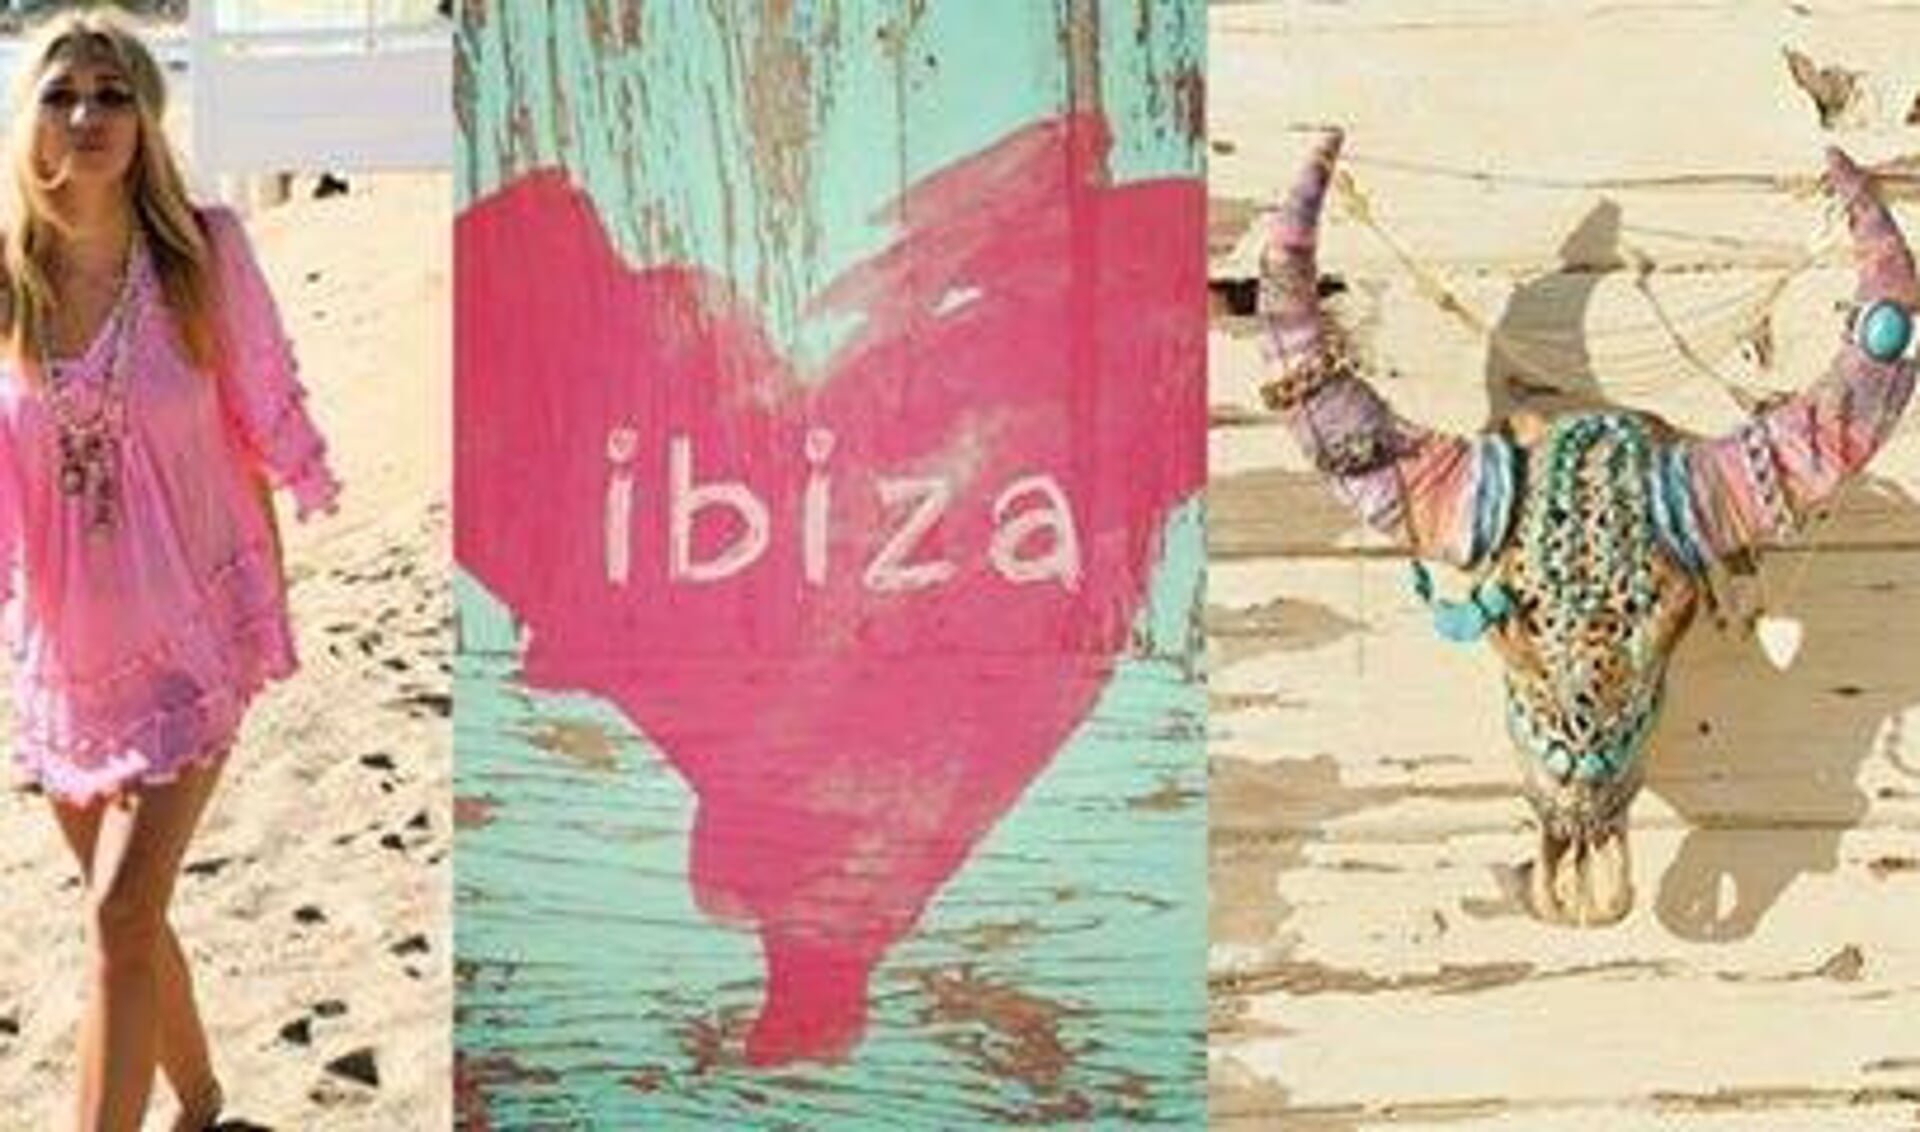 Kleding, tassen, handgemaakte voorwerpen: alles in Ibiza-stijl bij de meer dan 175 kramen tijdens het Ibiza Festival.